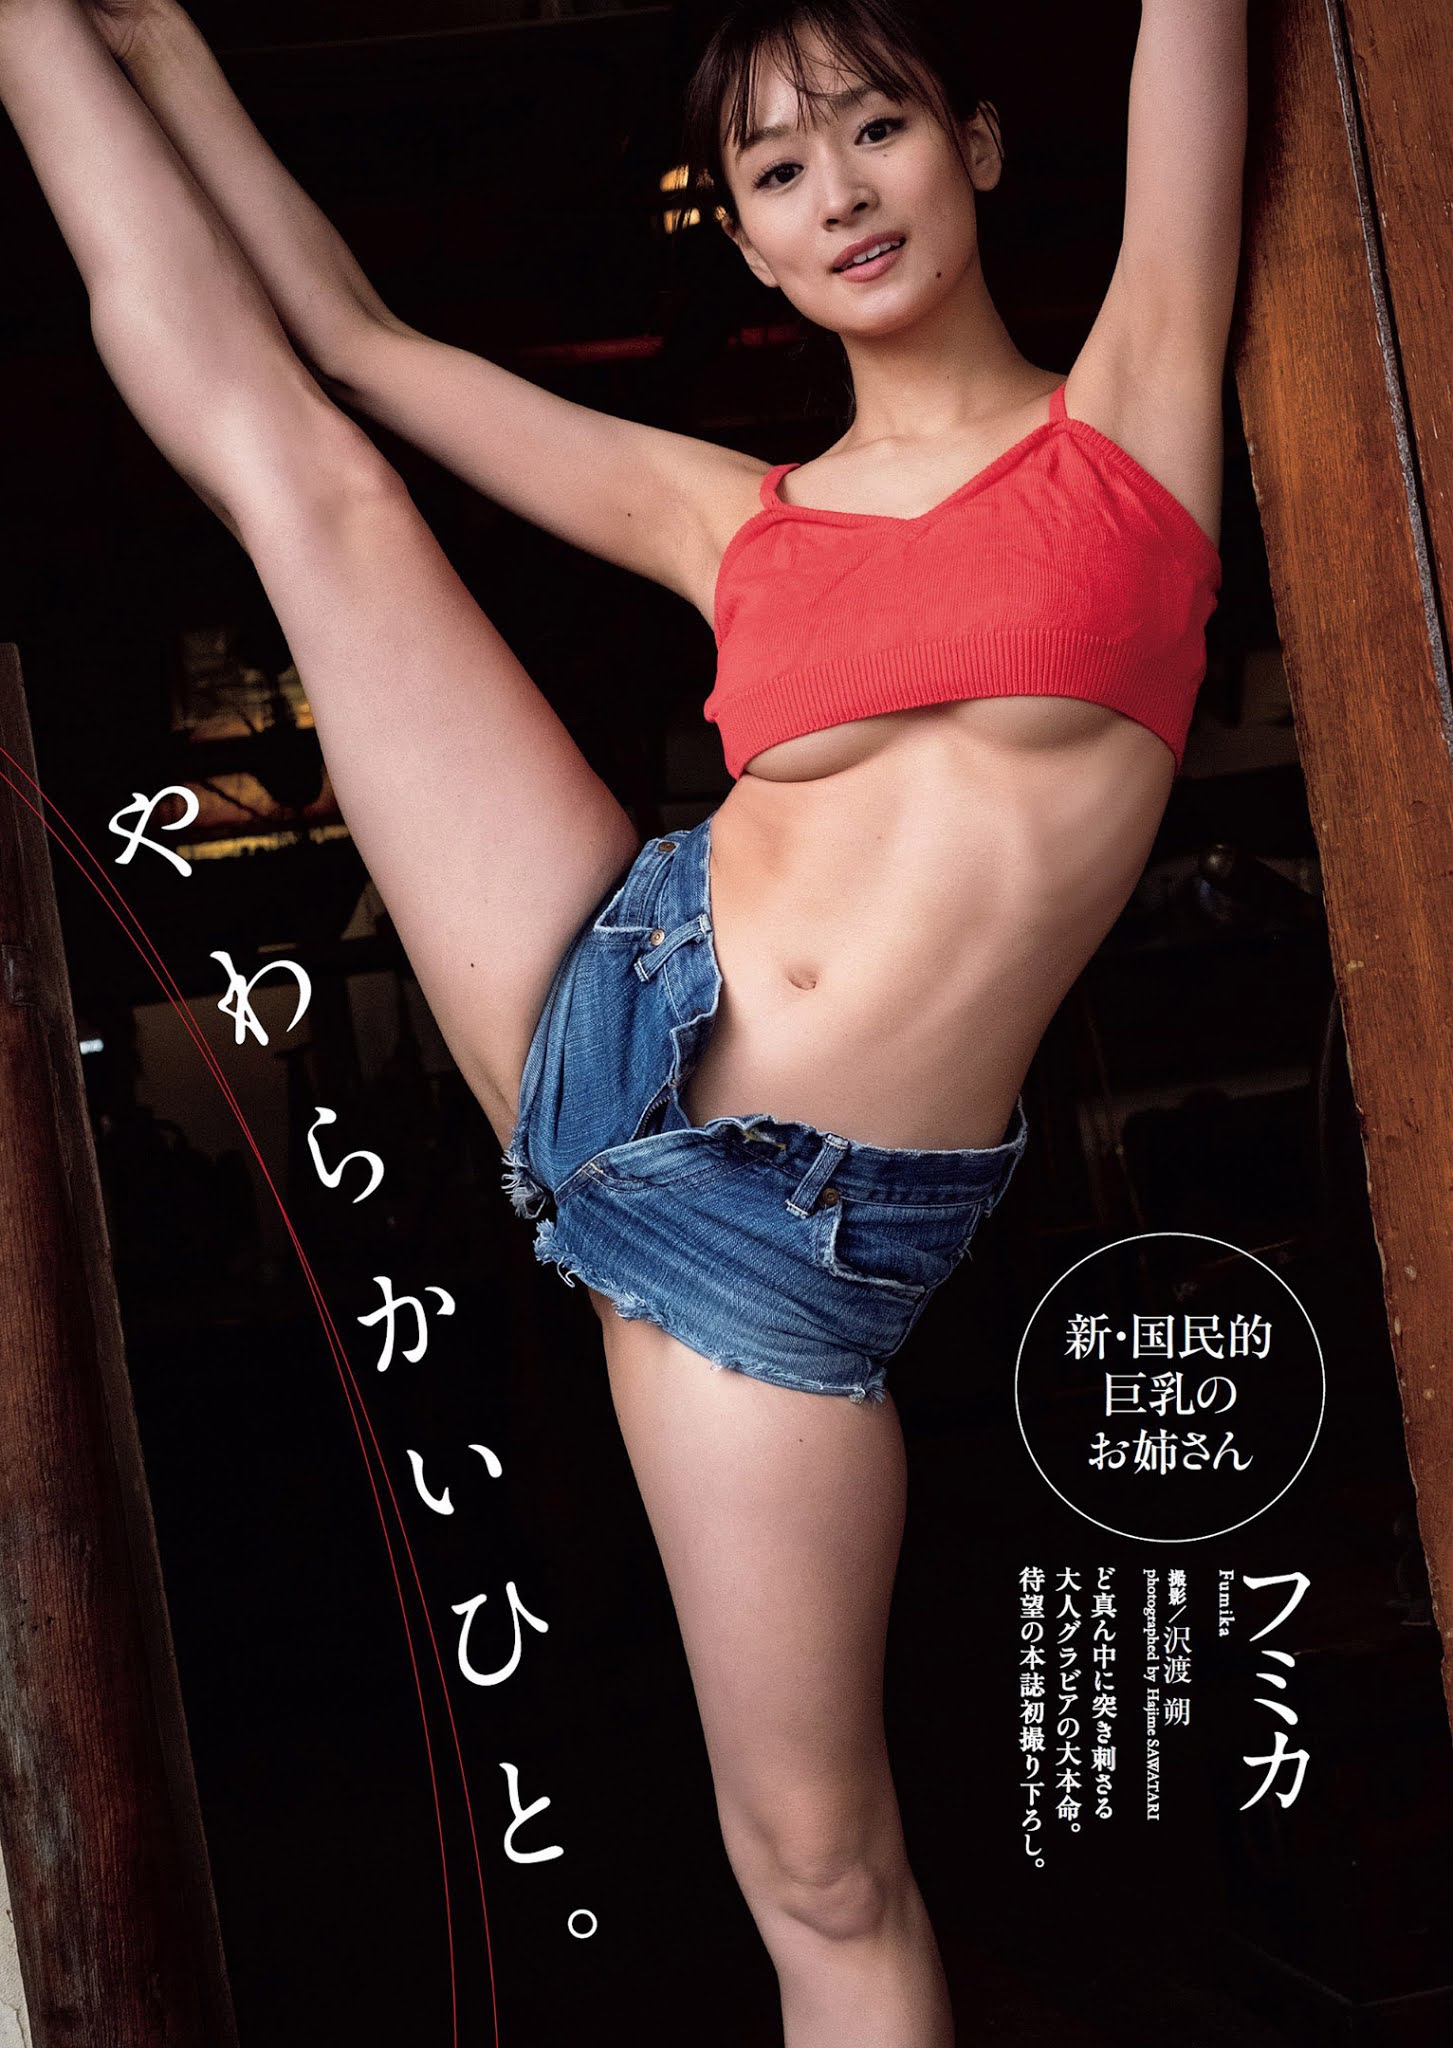 Fumika フミカ, Weekly Playboy 2021 No.17 (週刊プレイボーイ 2021年17号)